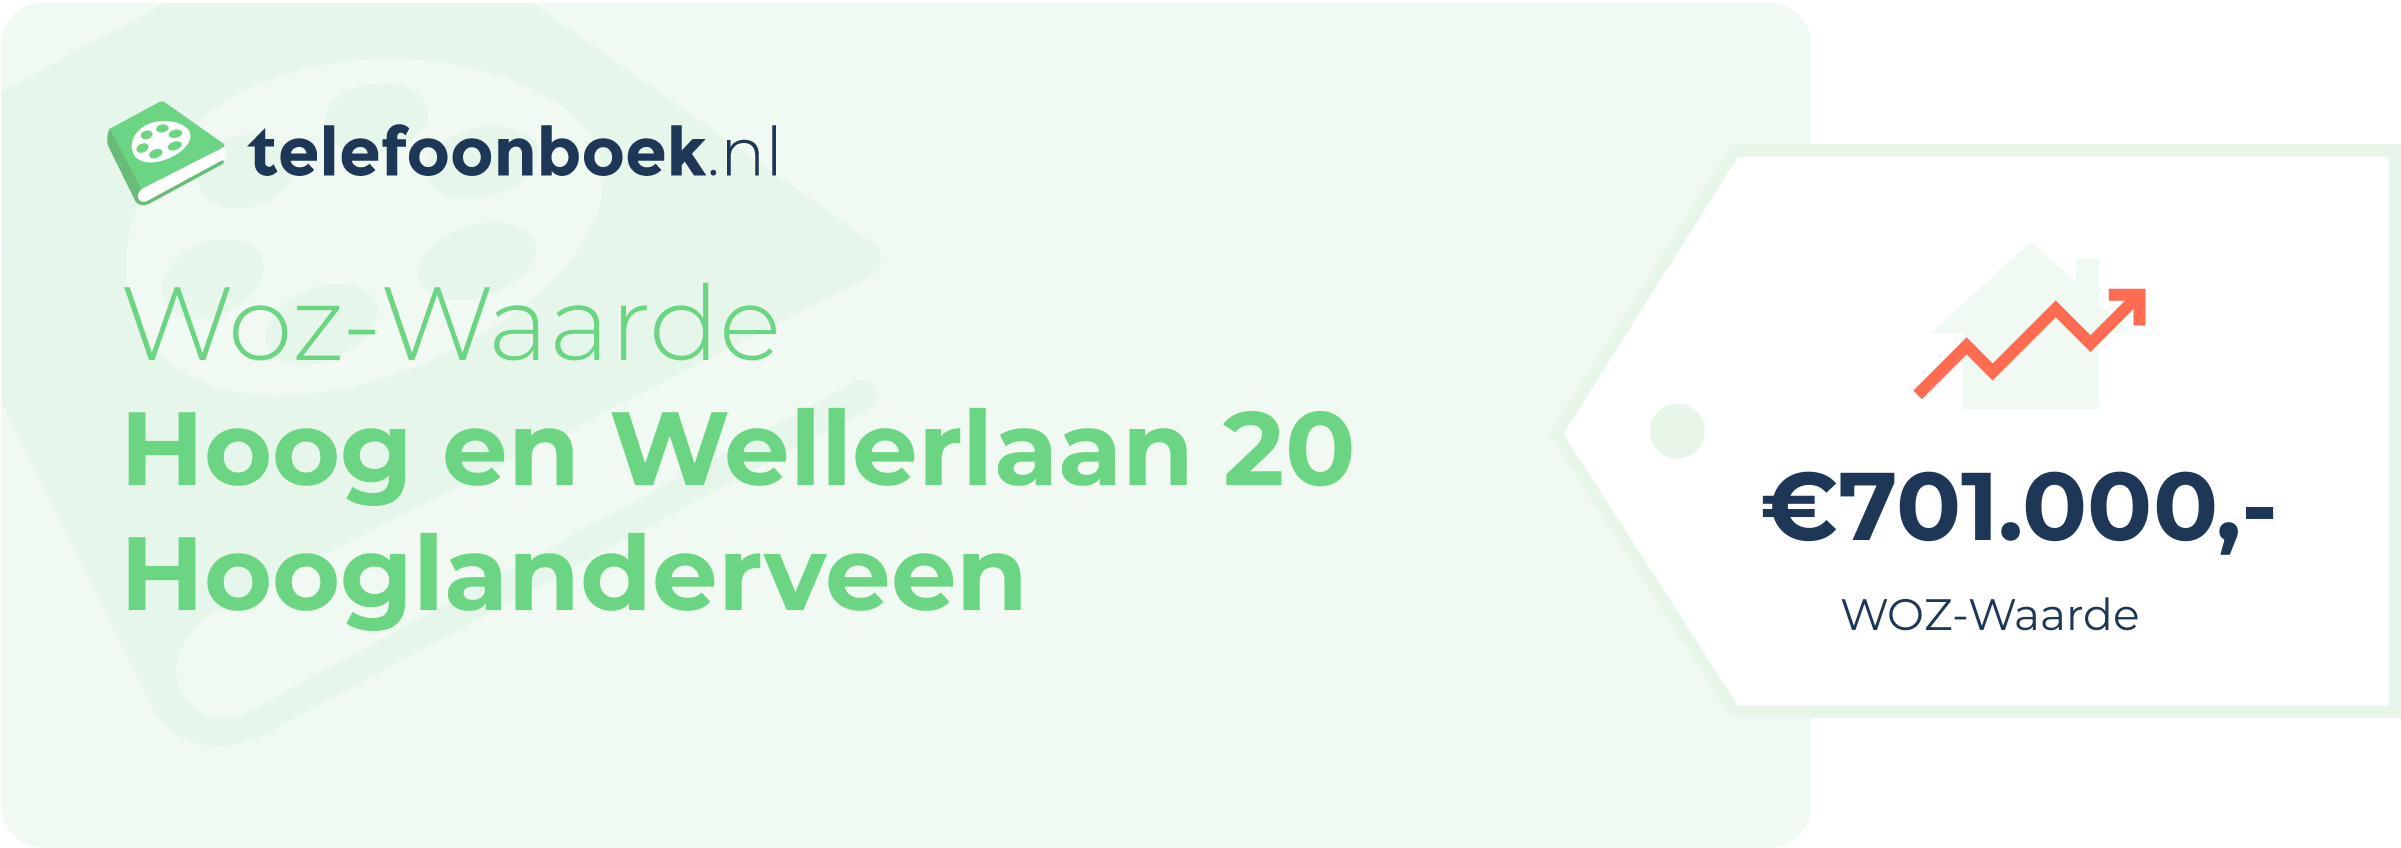 WOZ-waarde Hoog En Wellerlaan 20 Hooglanderveen